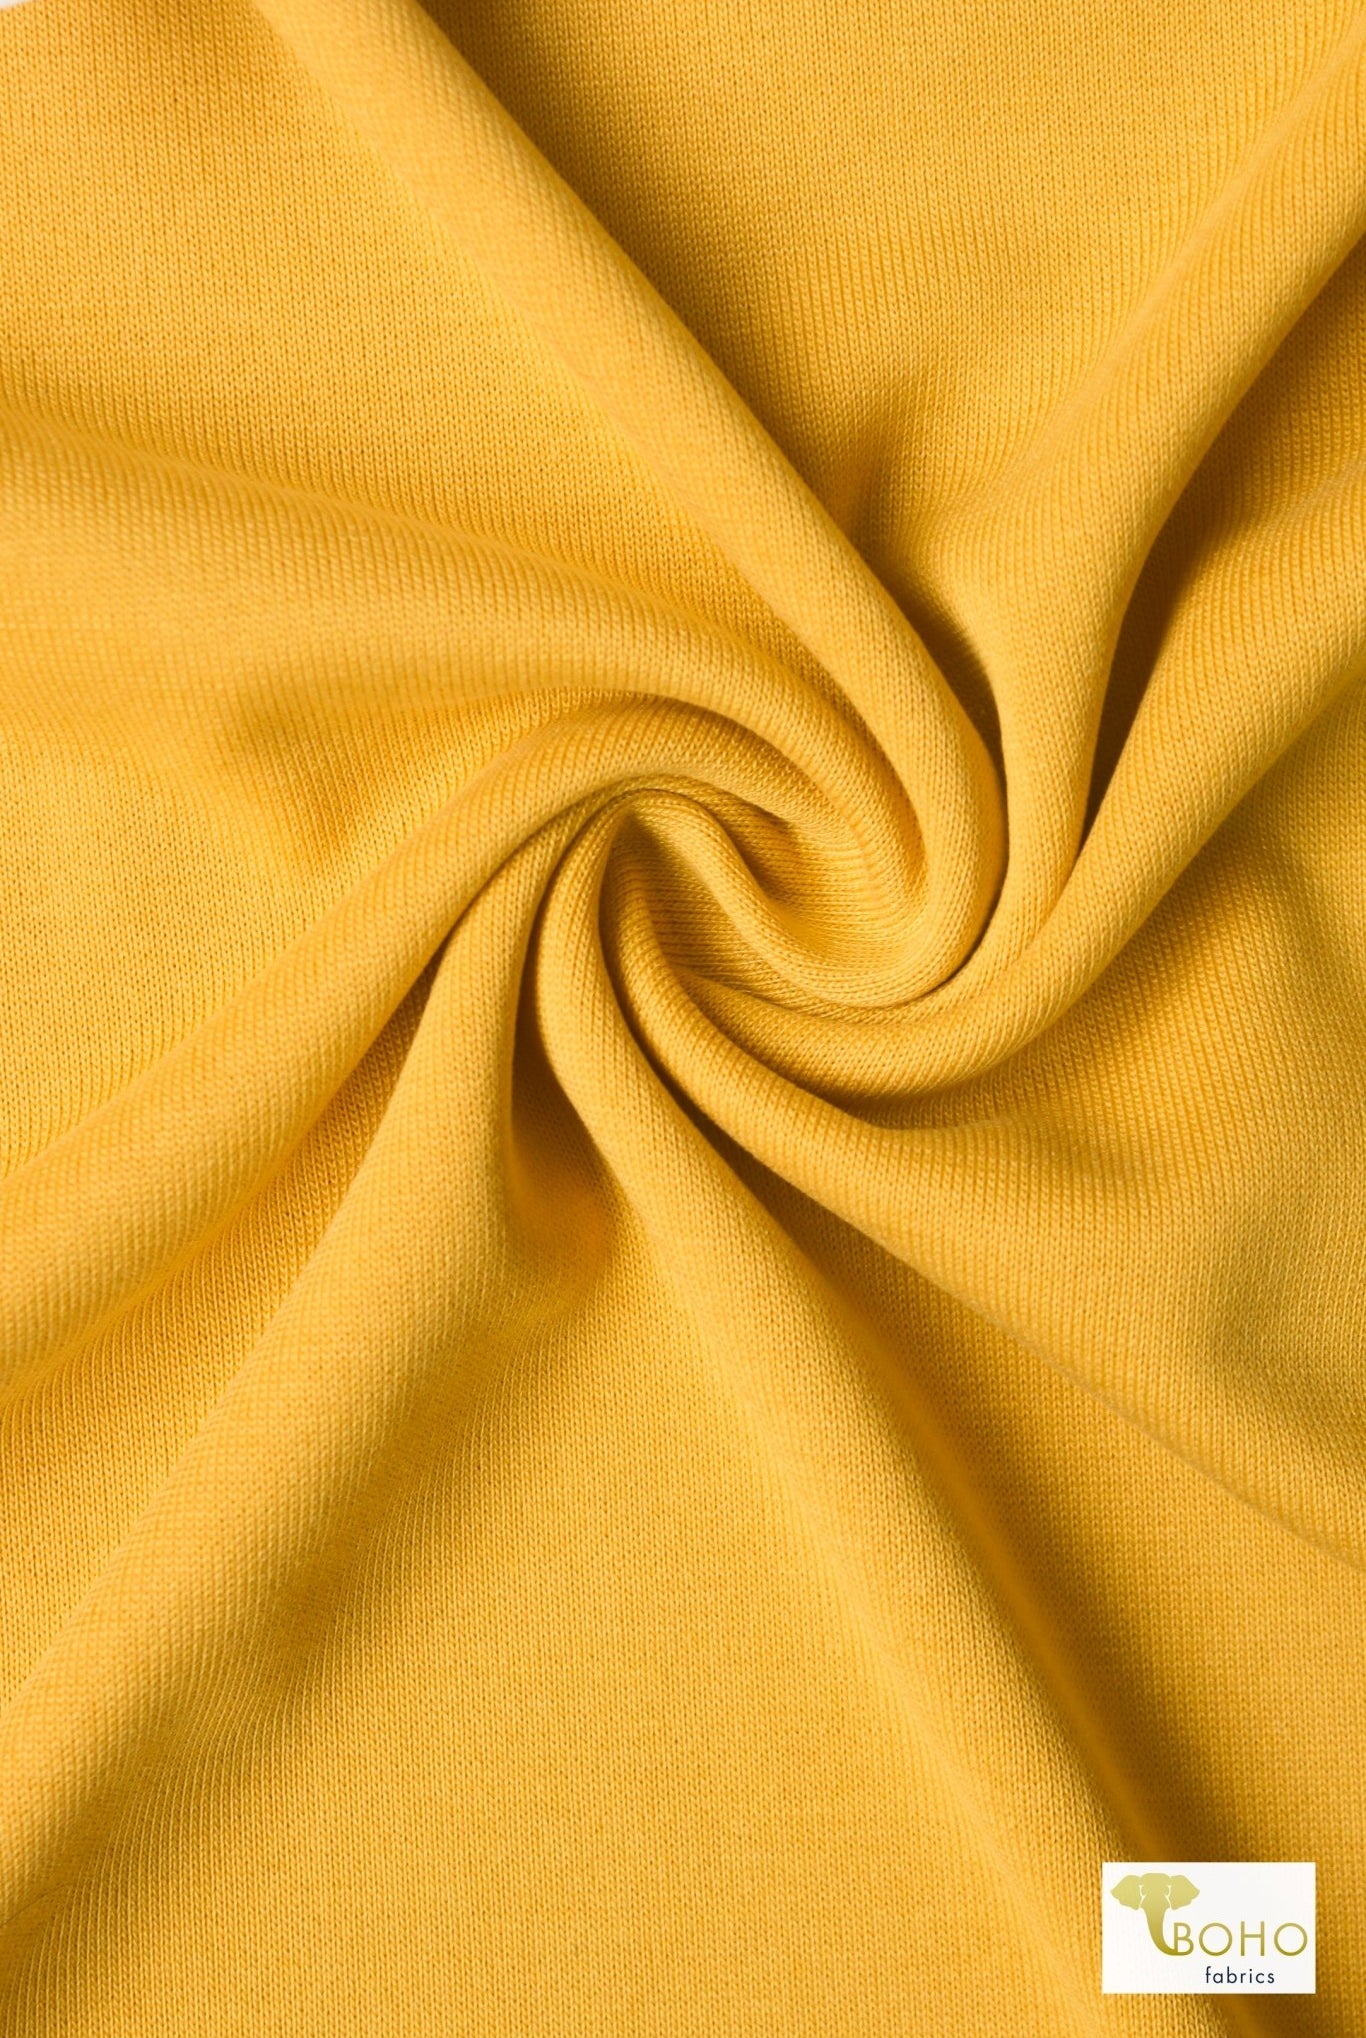 Mustard Yellow, Solid Cupro Knit Fabric - Boho Fabrics - Cupro, Knit Fabric